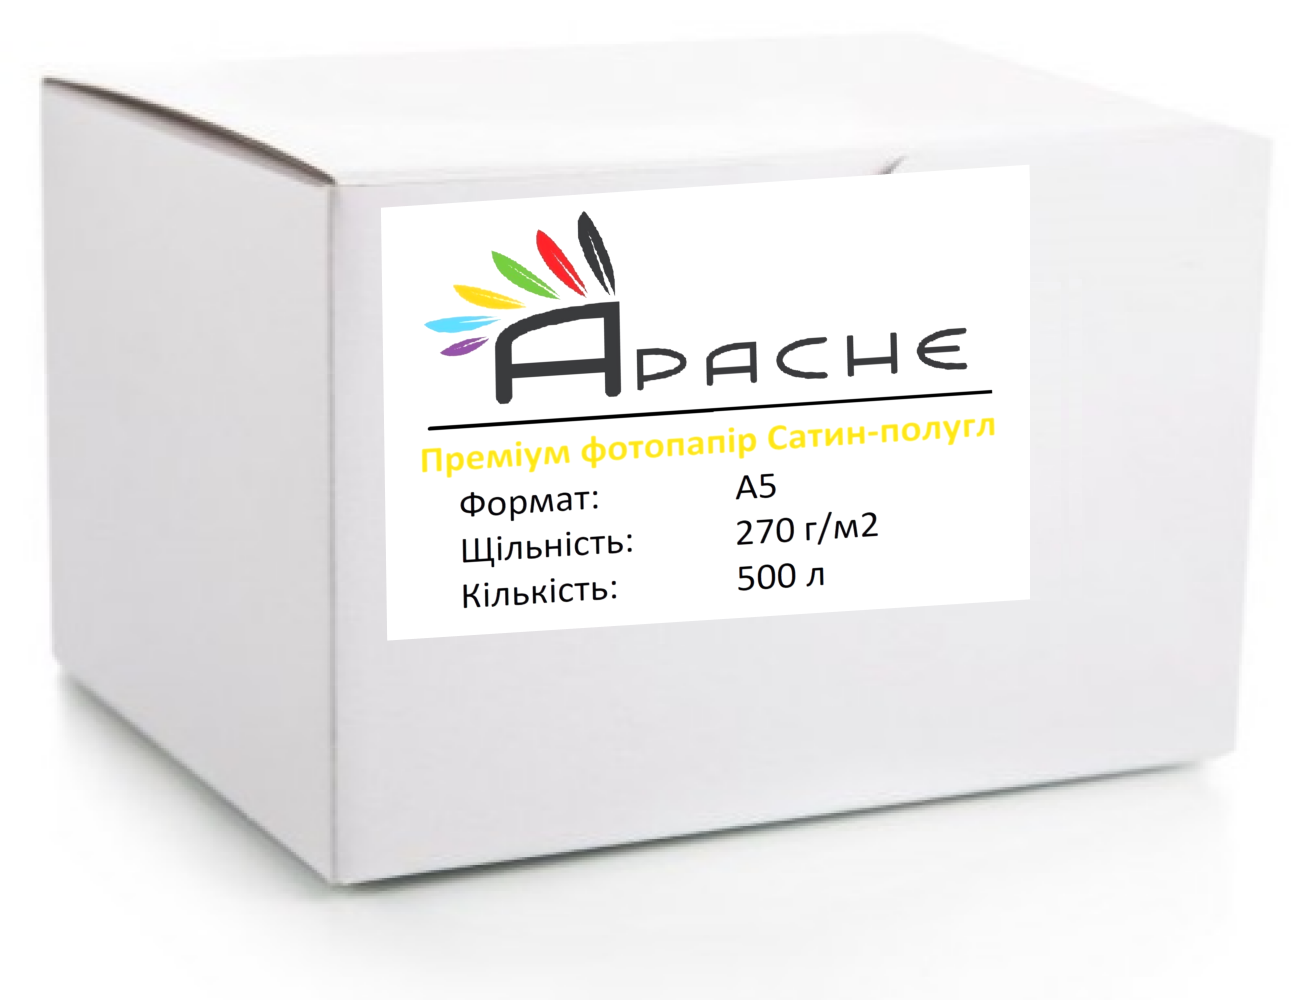 Фотопапір Apache A5 (500л) 270г/м2 Преміум Сатин напівглянець | Купити в інтернет магазині